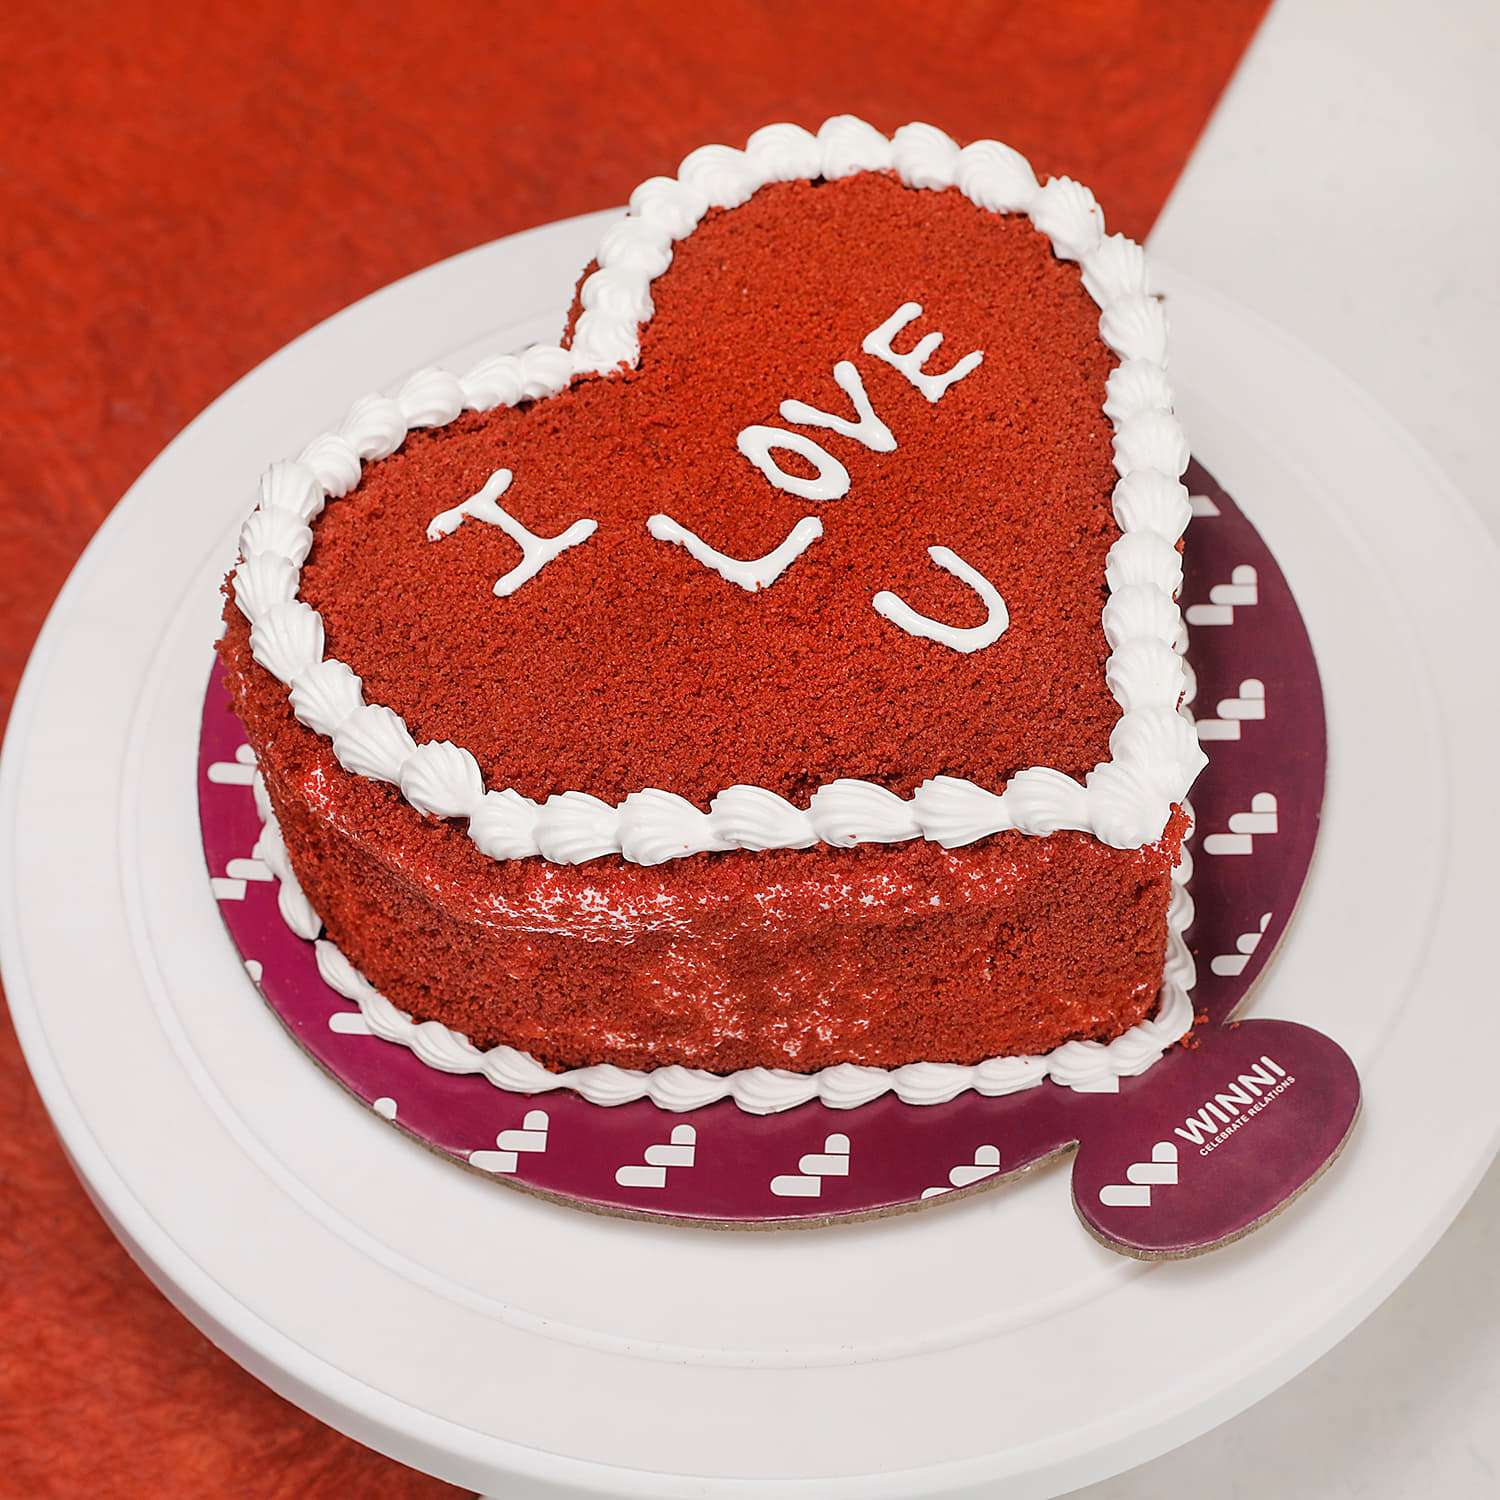 The Bake Delights. Decorated Red Velvet Heart Cake